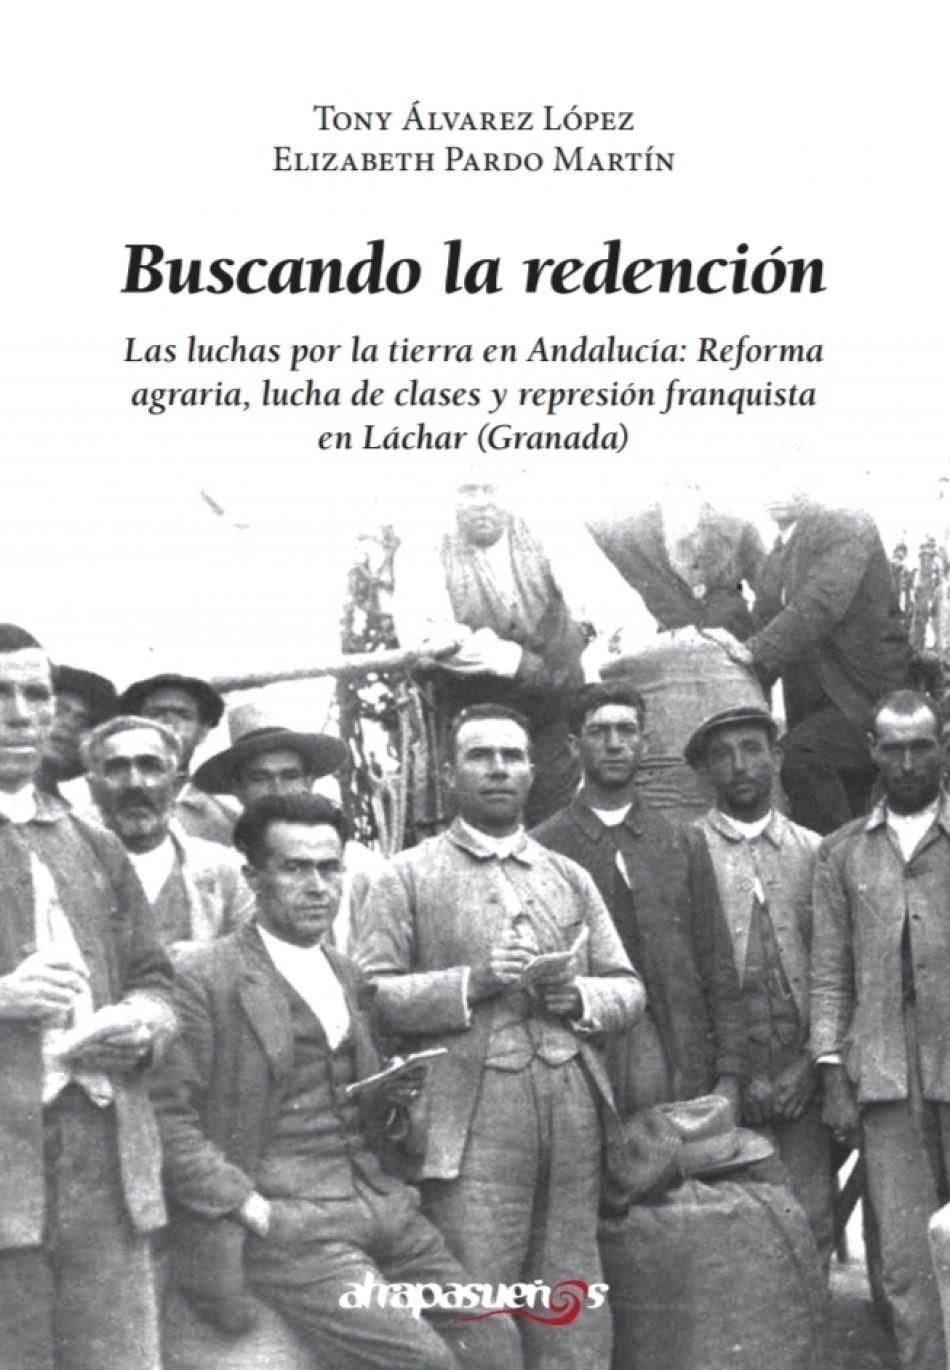 «Buscando redención», un libro que arroja luz sobre la guerra y la dictadura en el pueblo de Láchar (Granada)